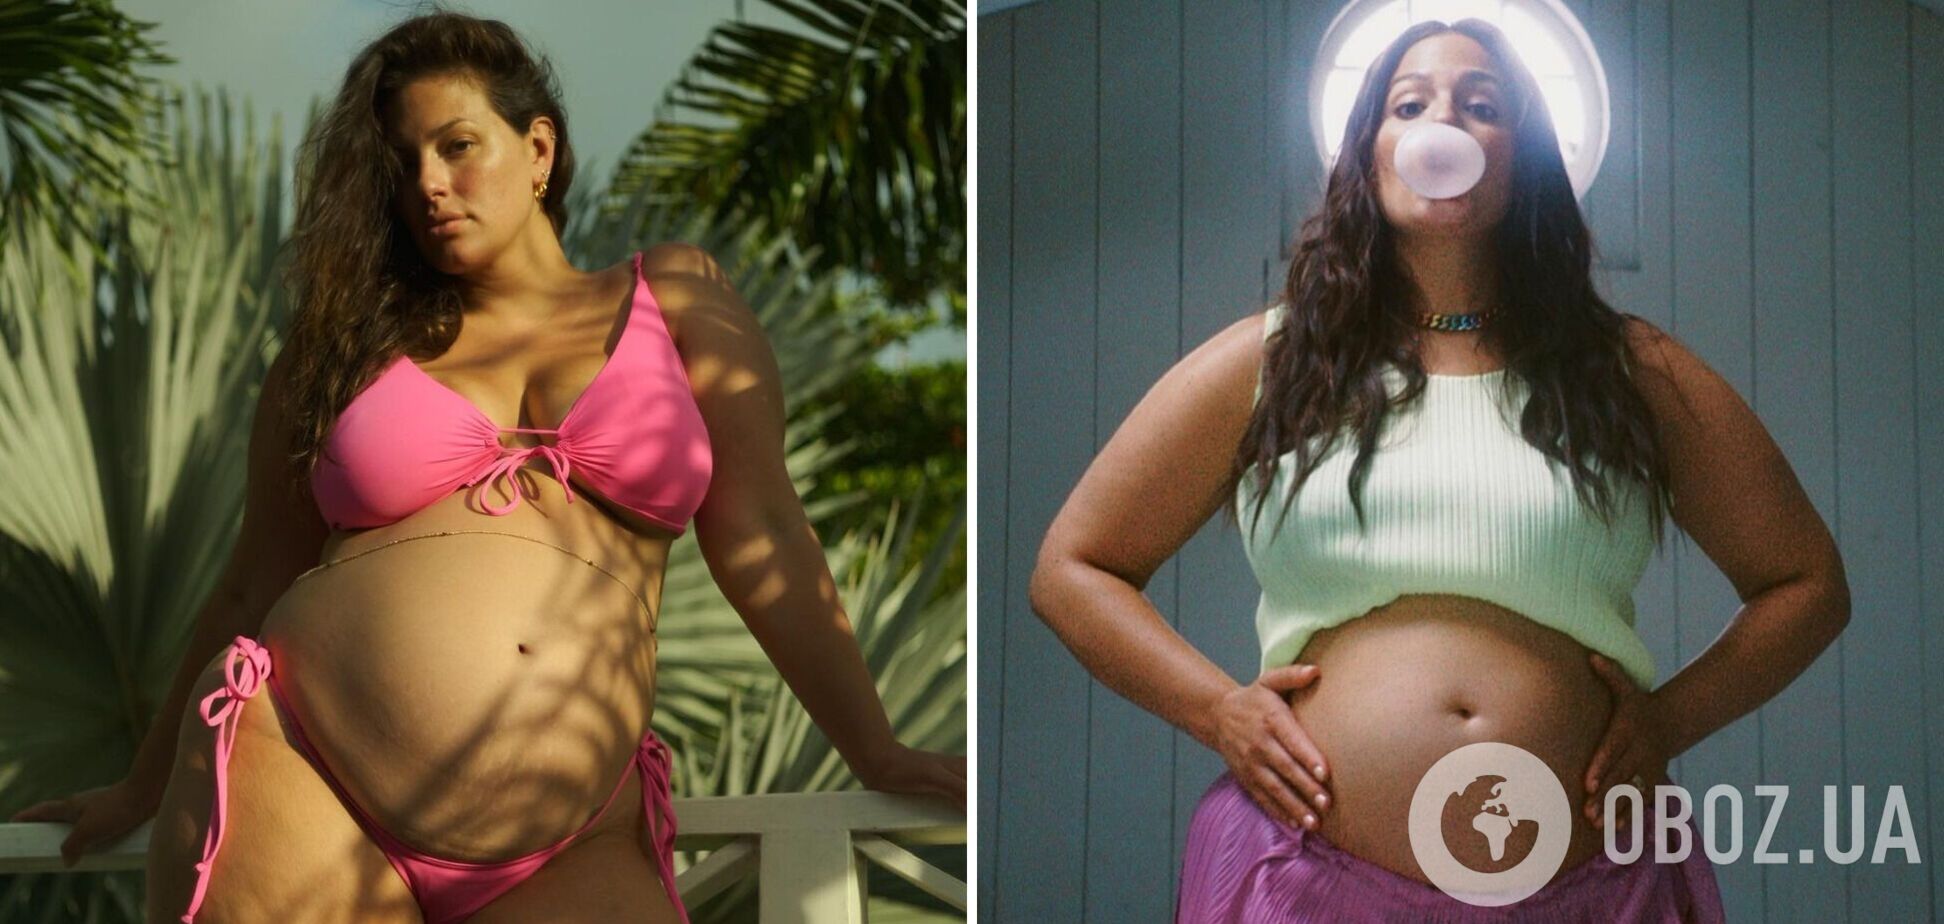 Модель plus-size Эшли Грем беременна двойней. Видео